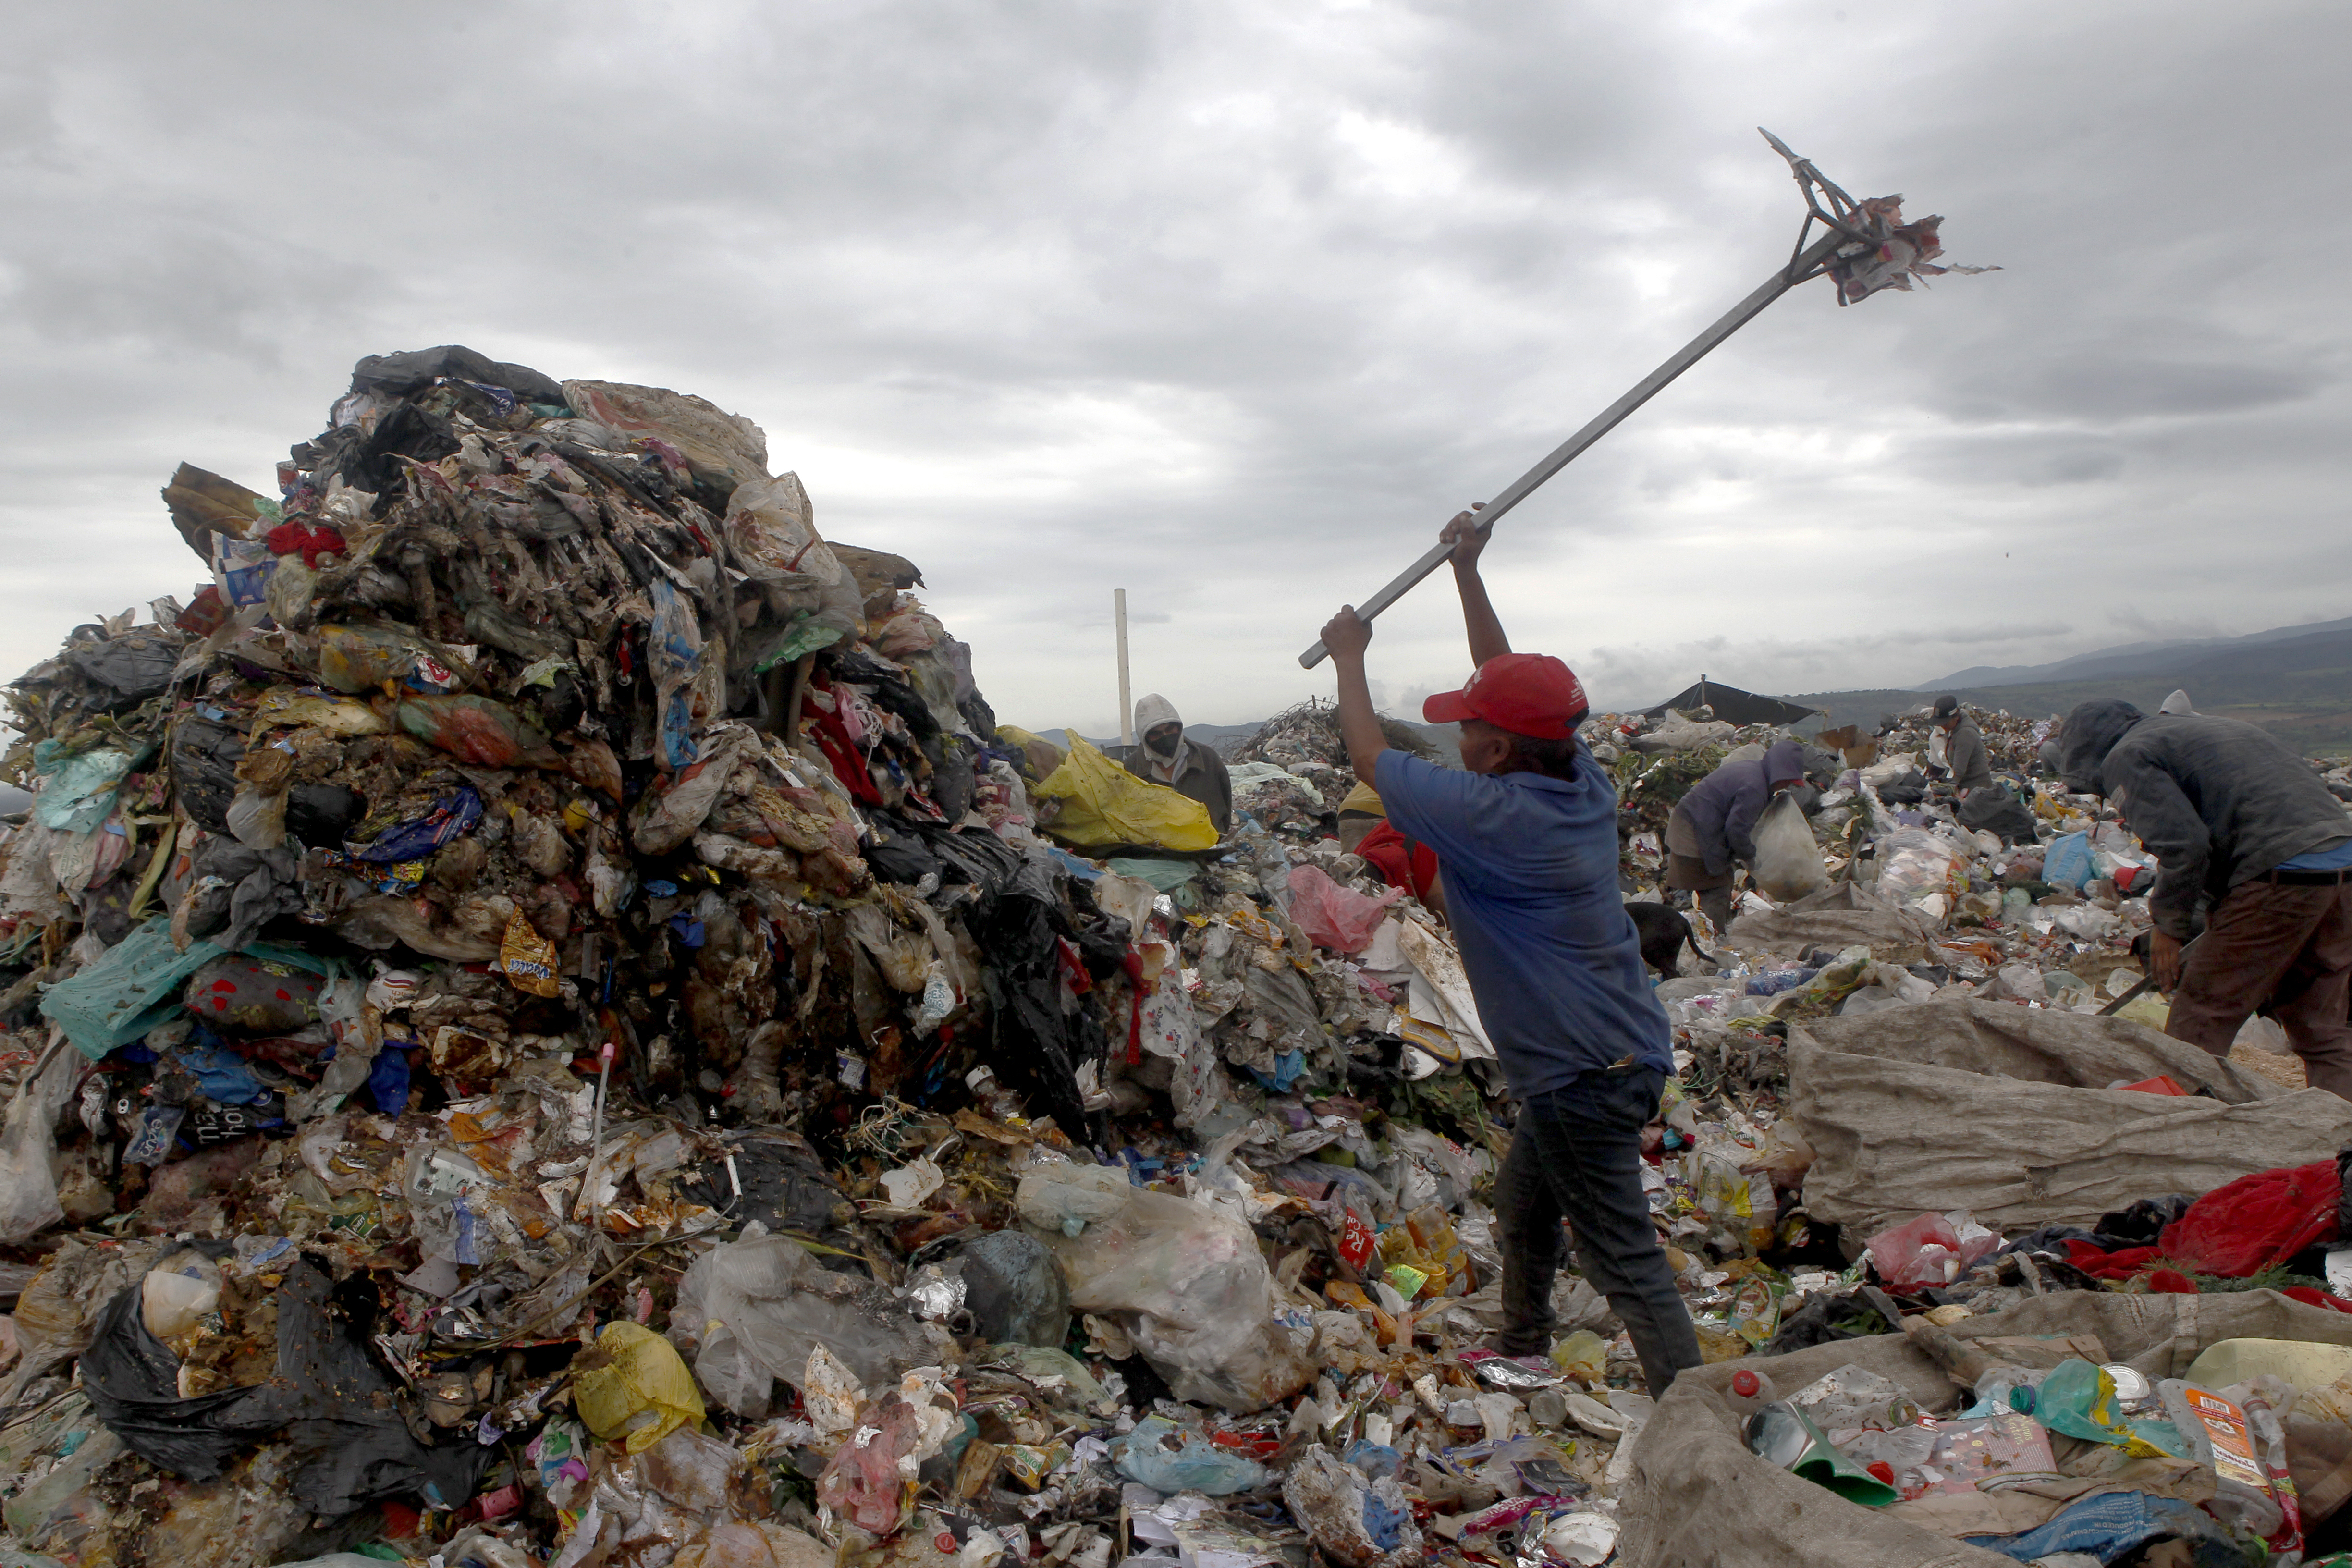 Montañas de basura. Una mujer trabaja en la basura en Chimalhuacán, Estado de México. (Foto: Karina Hernández / Infobae)